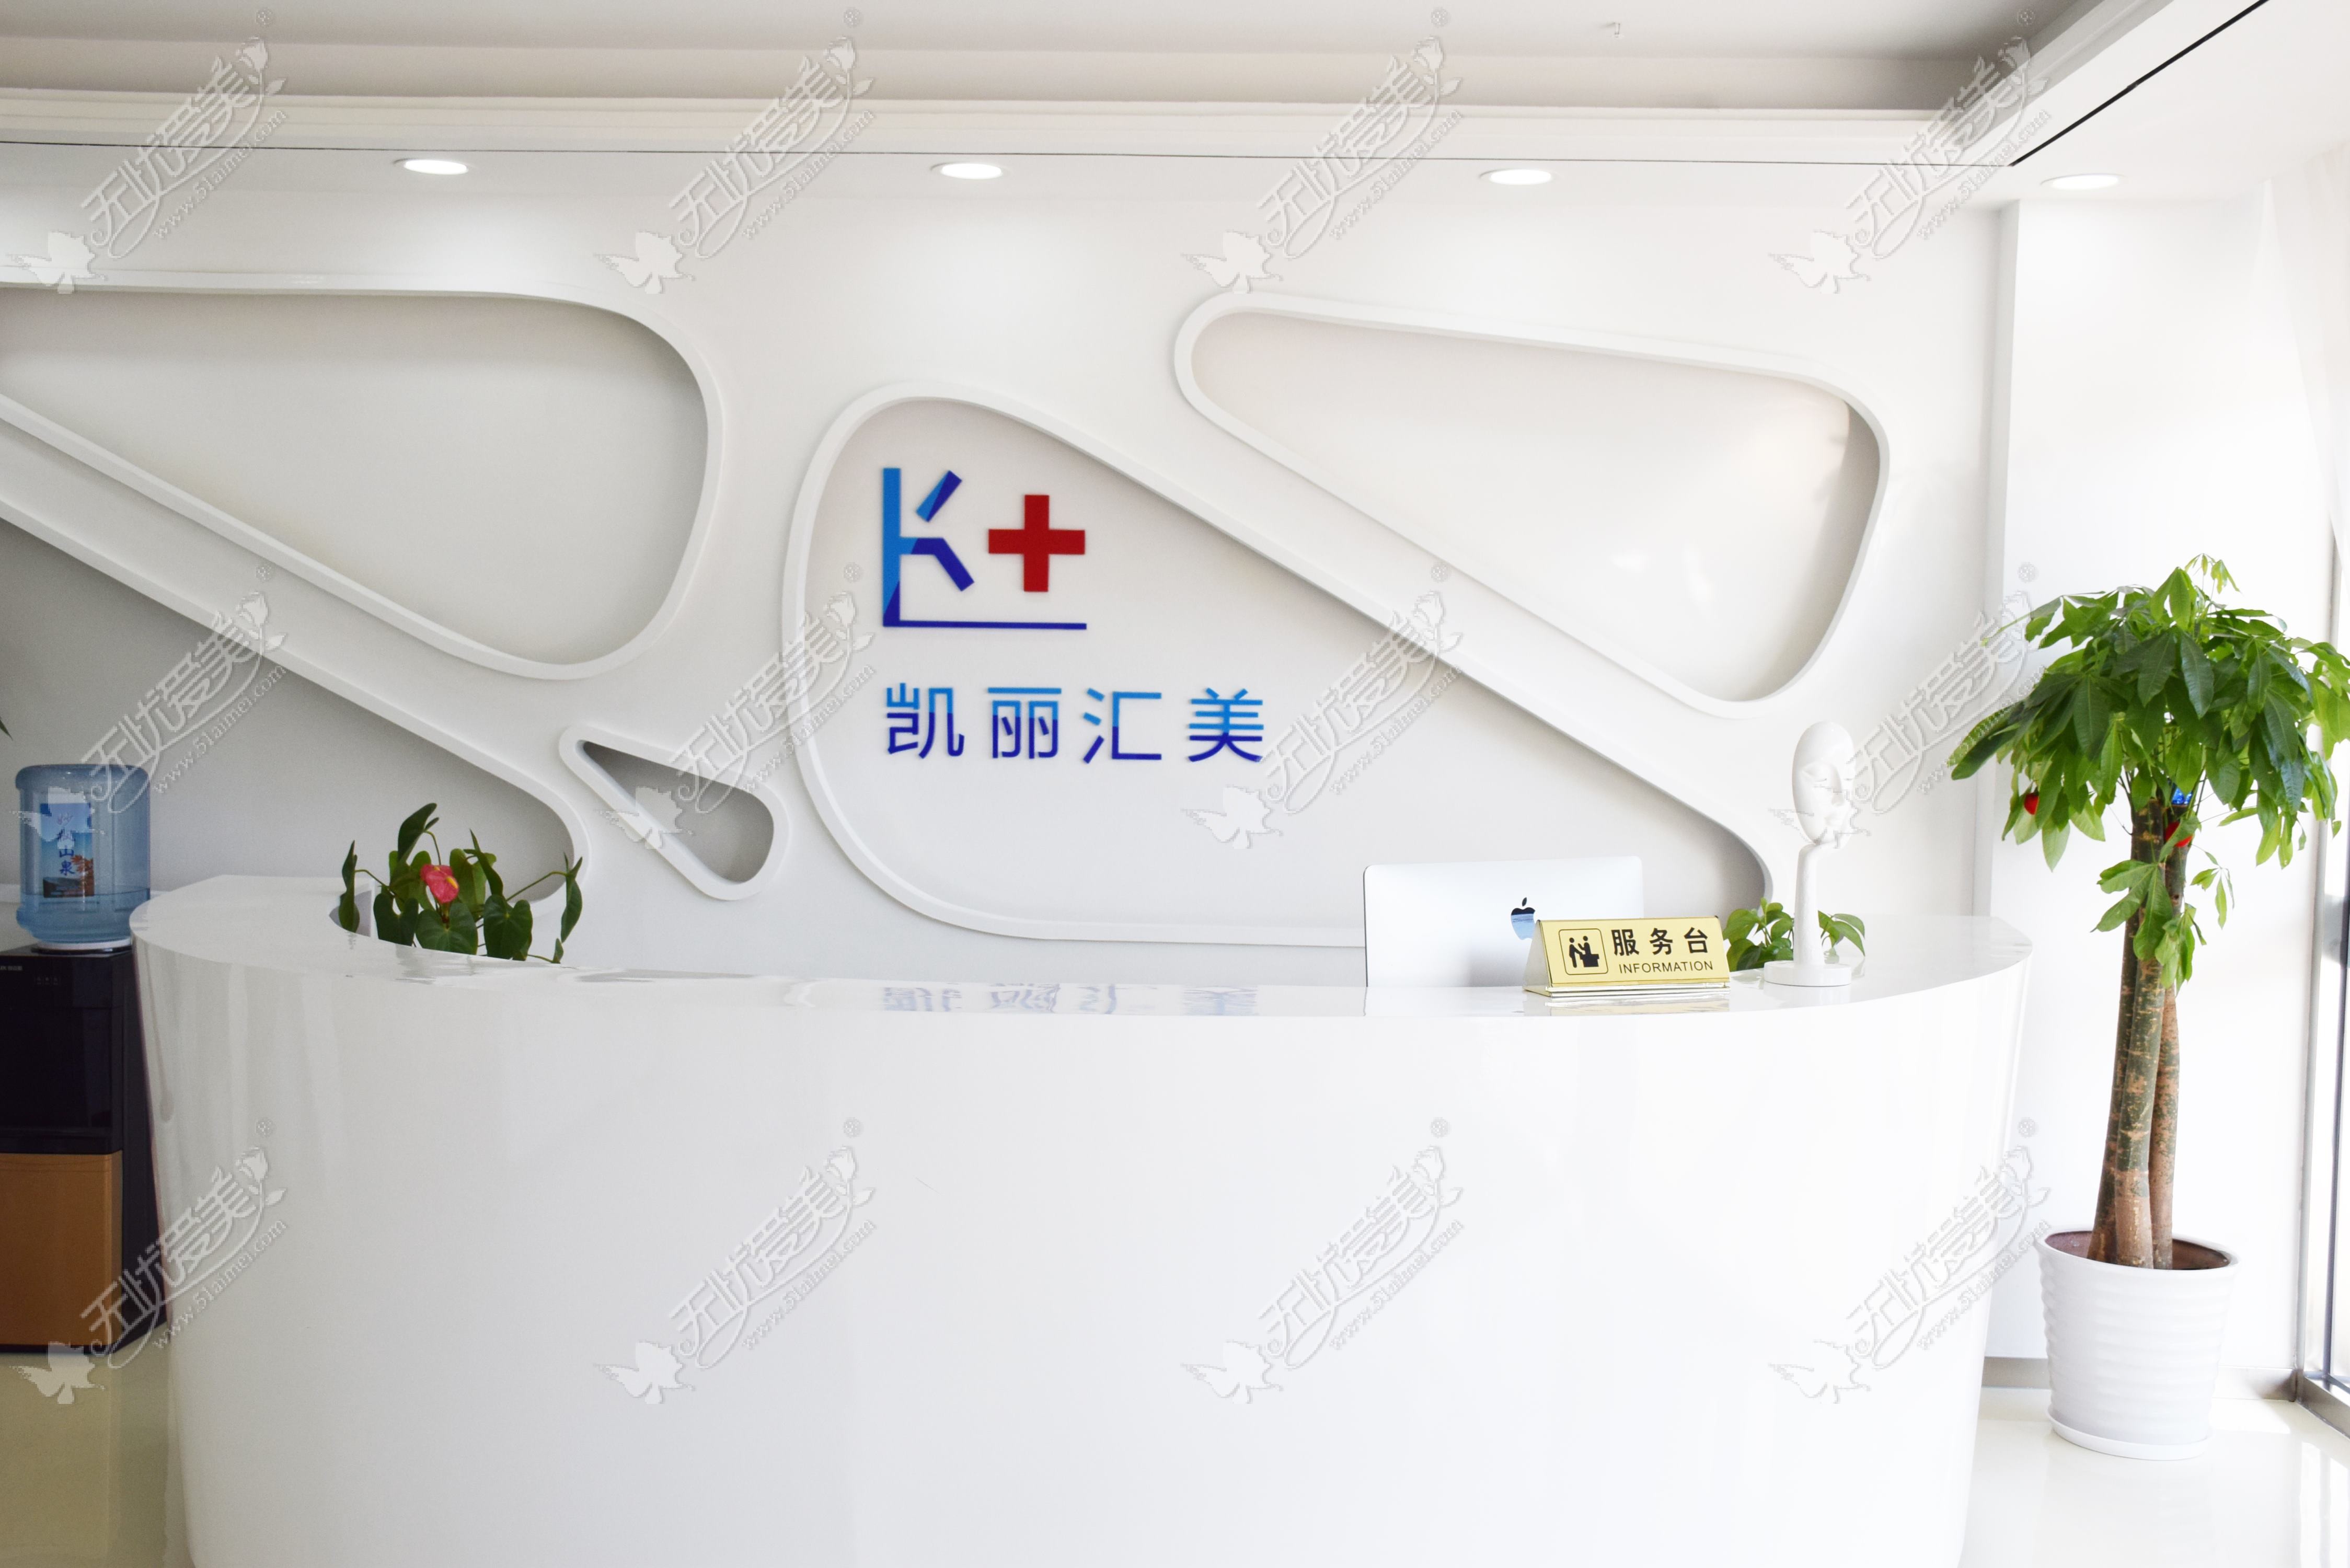 北京速媞肌医疗美容诊所